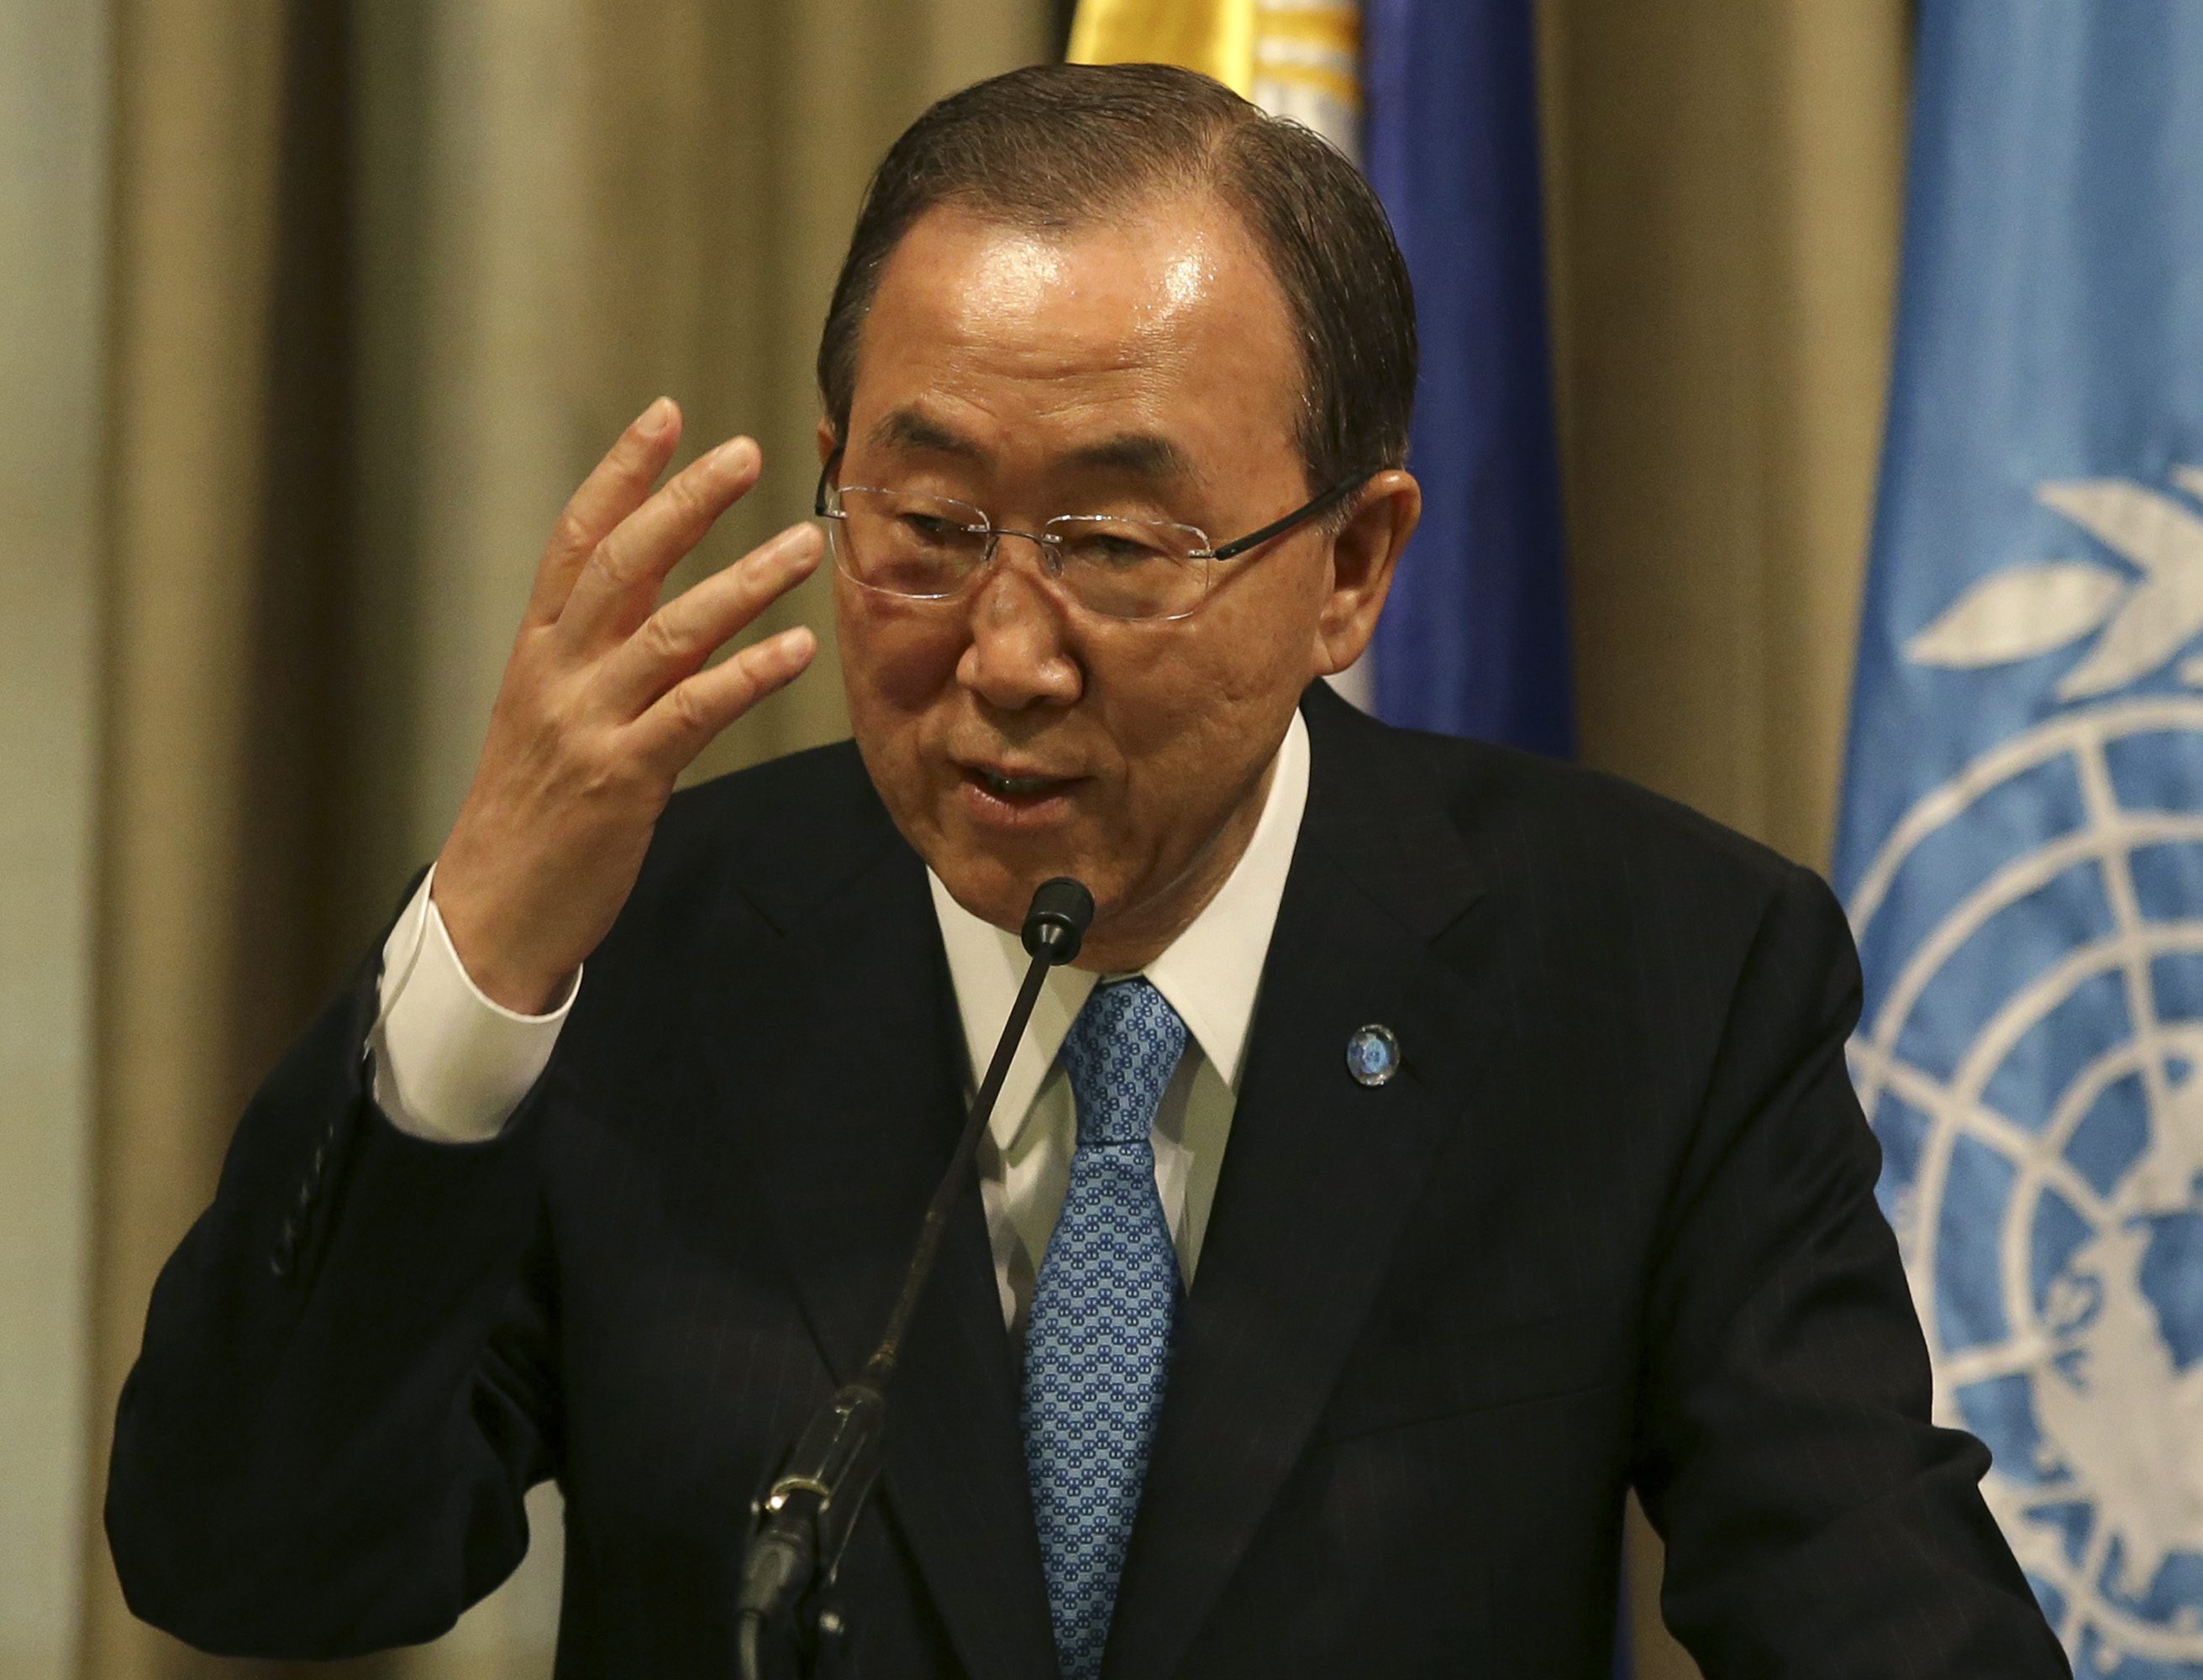 Giornata Memoria, Ban Ki-moon: non c'è futuro senza ricordare passato